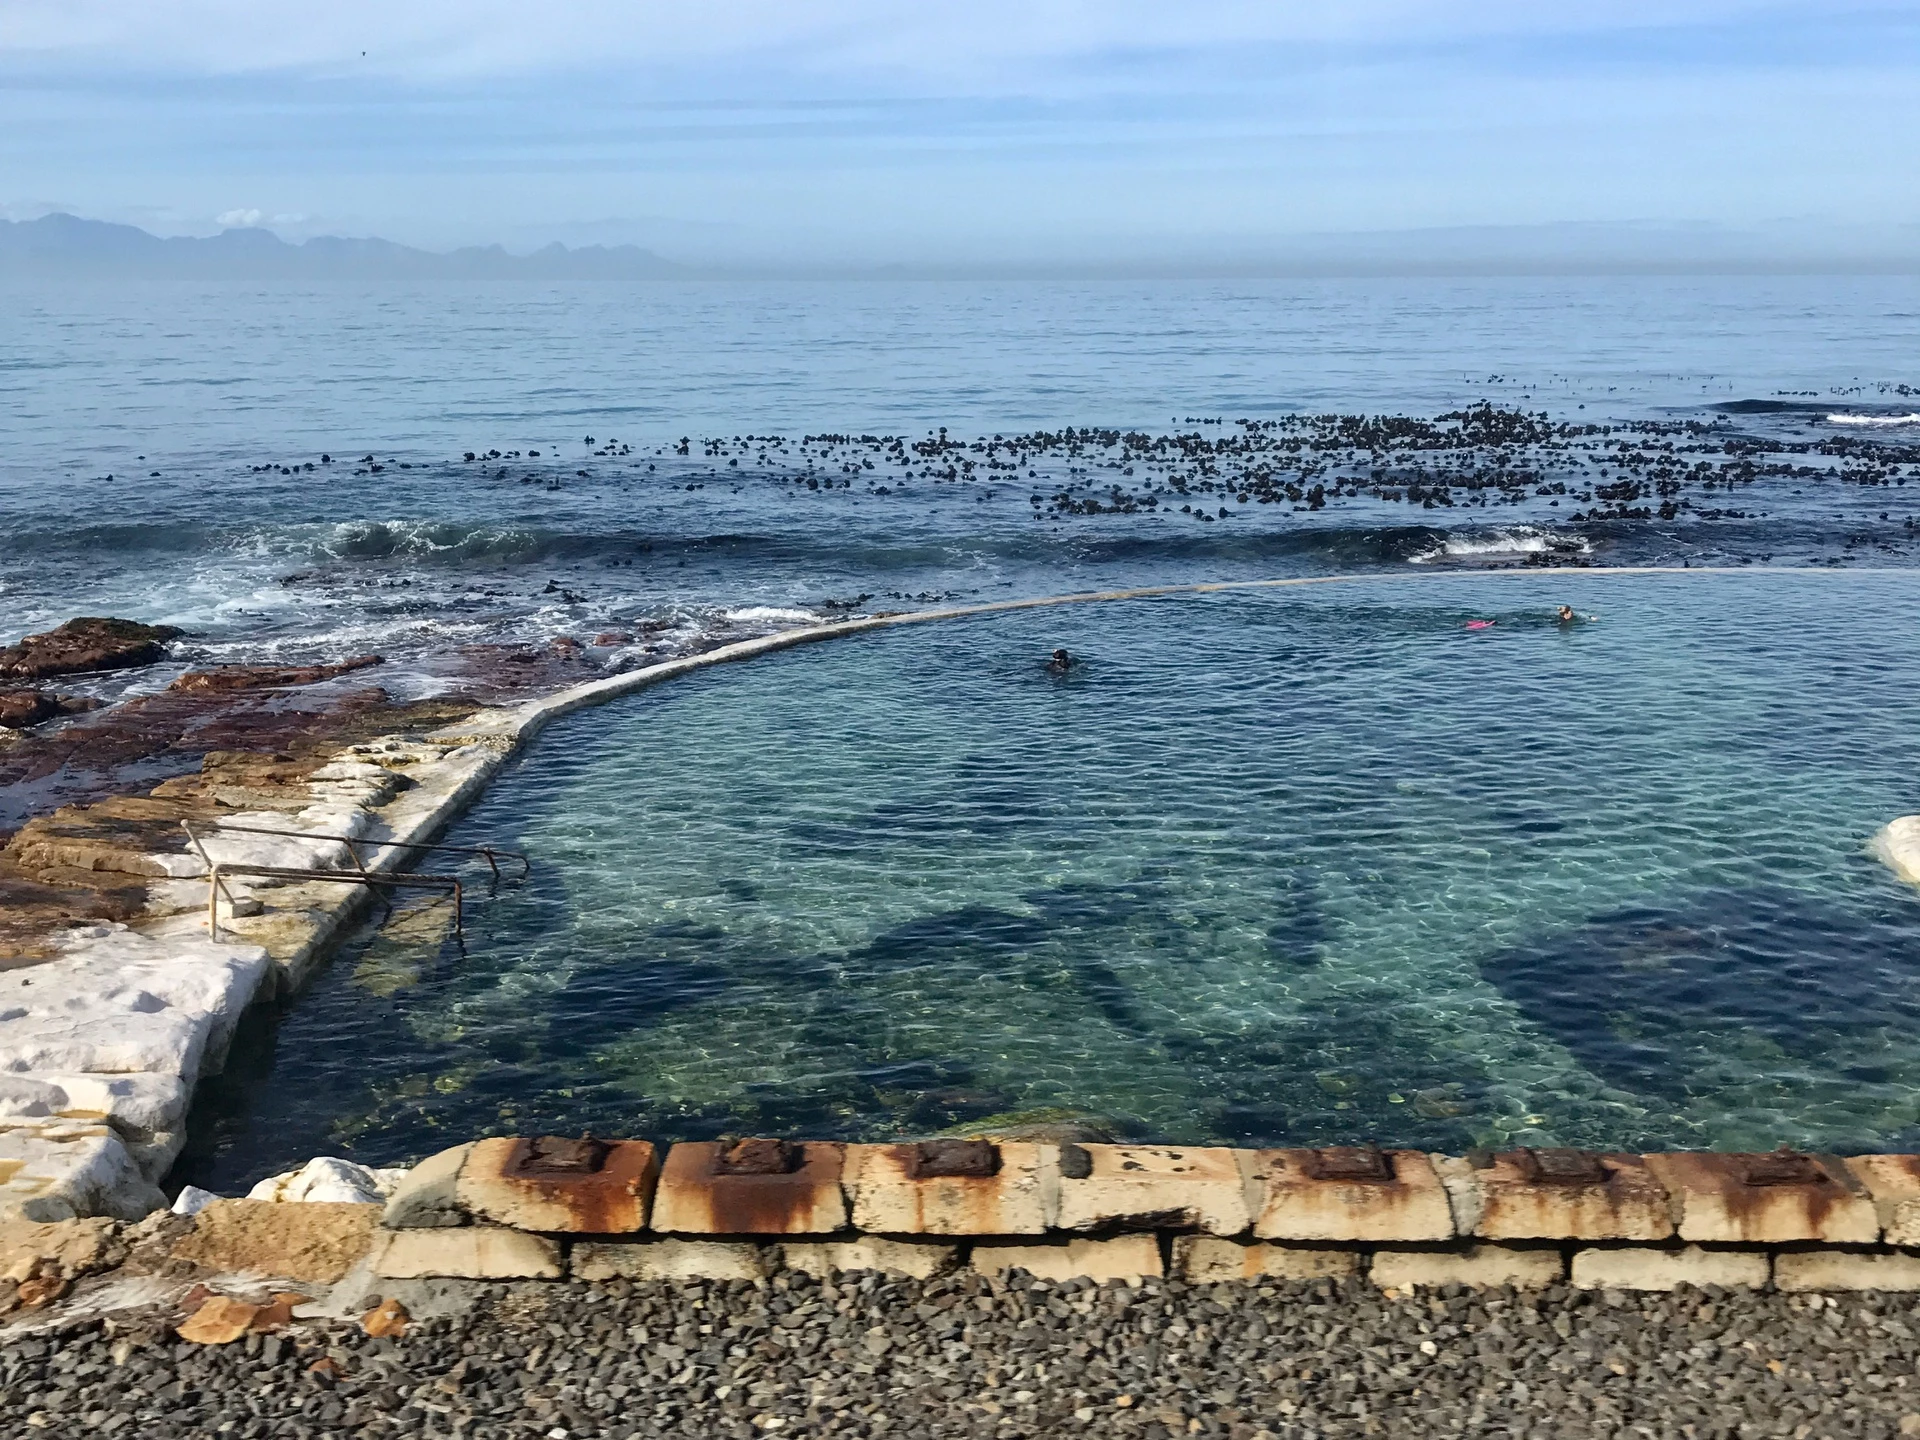 Dalebrook Tidal Pool, Cape Town, Nam Phi: Bể bơi thủy triều Dalebrook thu hút những người thích bơi lội đến vùng ngoại ô bãi biển St James. Nơi đây là một trong những hồ bơi ấn tượng nhất dọc theo bờ biển, với dáng vẻ như hòa hợp với đại dương một cách liền mạch. Ảnh: Andrew Thompson.